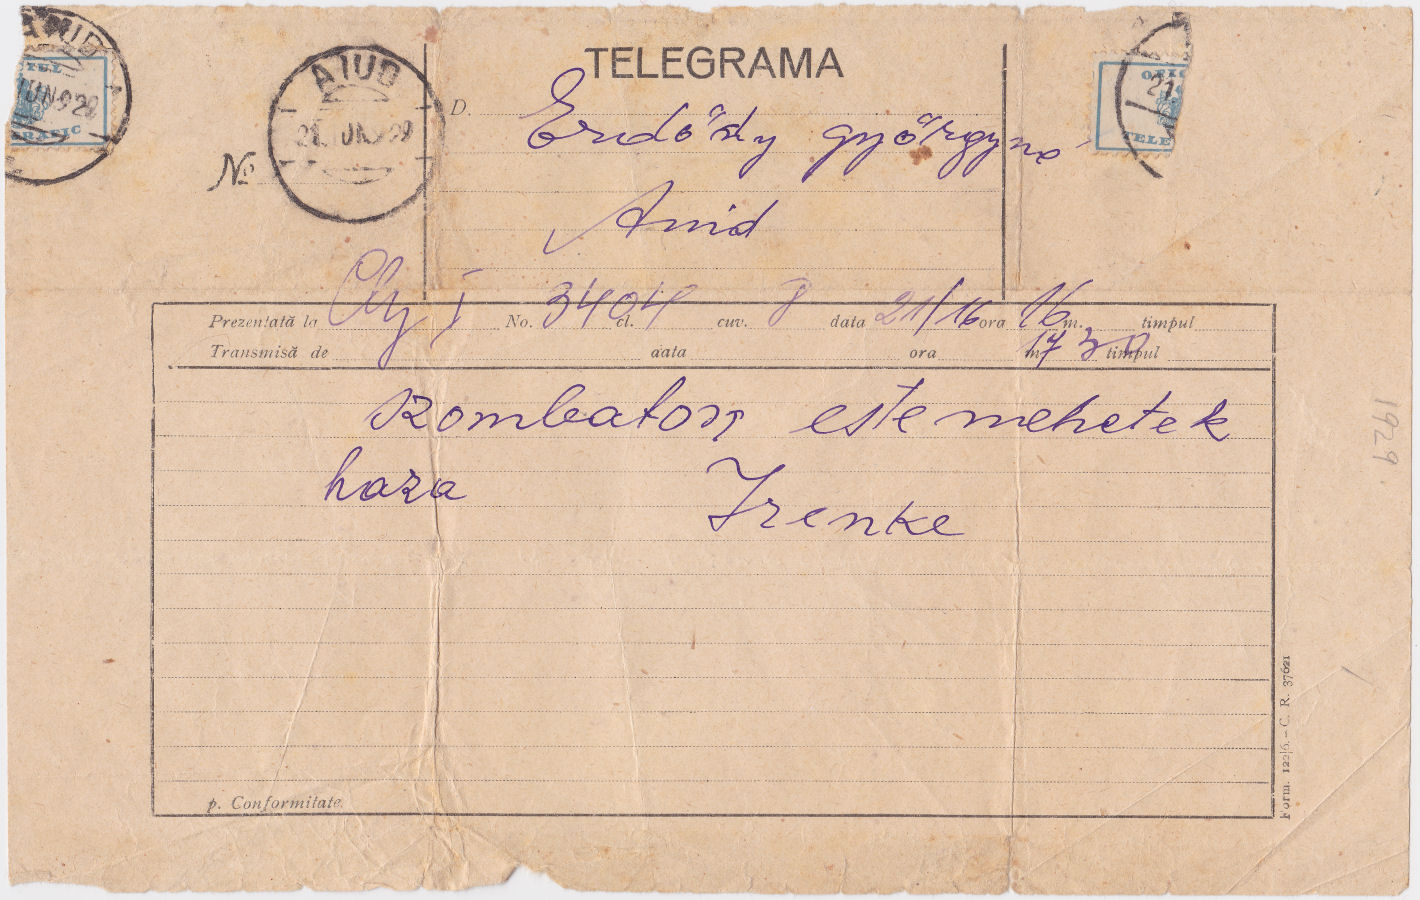 Telegram of 21 June 1929